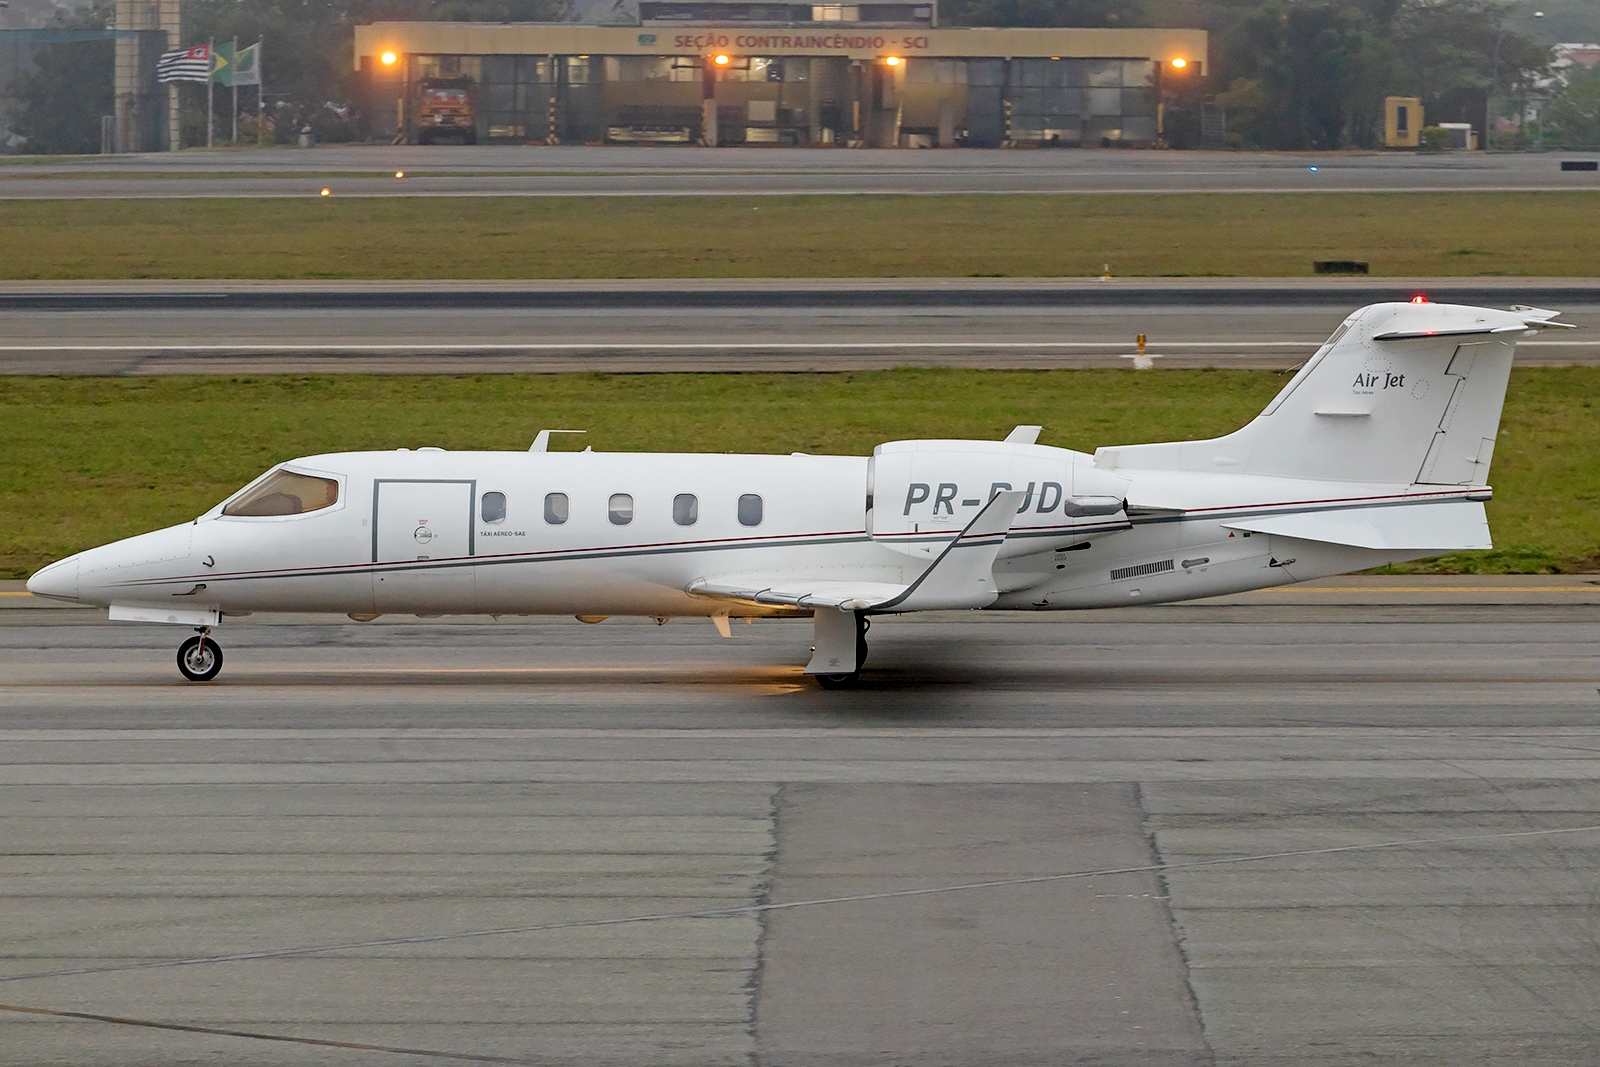 PR-PJD - Bombardier Learjet 31A